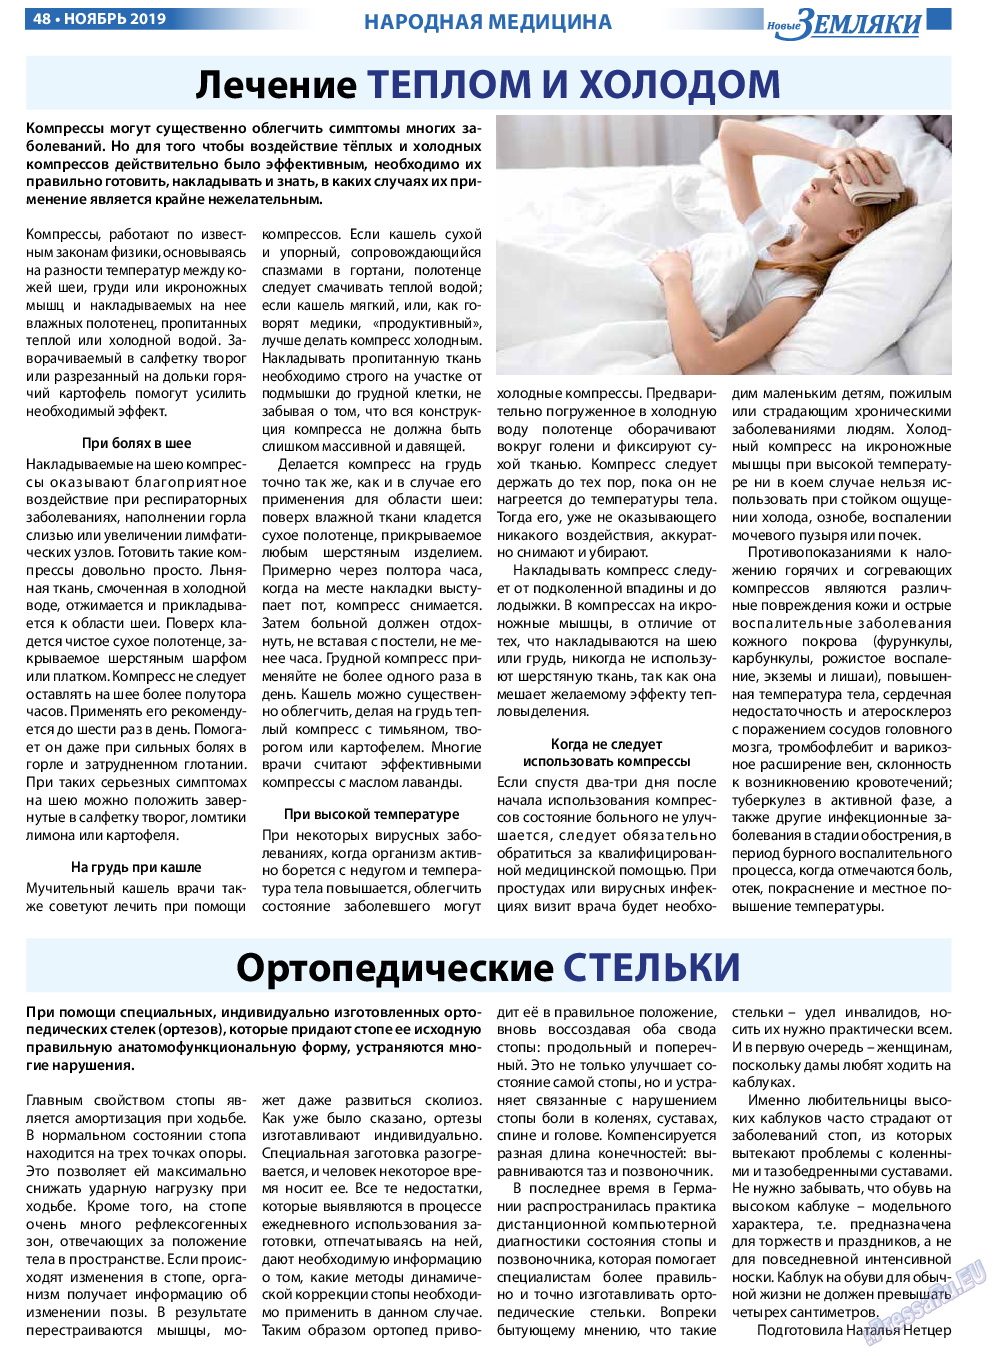 Новые Земляки, газета. 2019 №11 стр.48